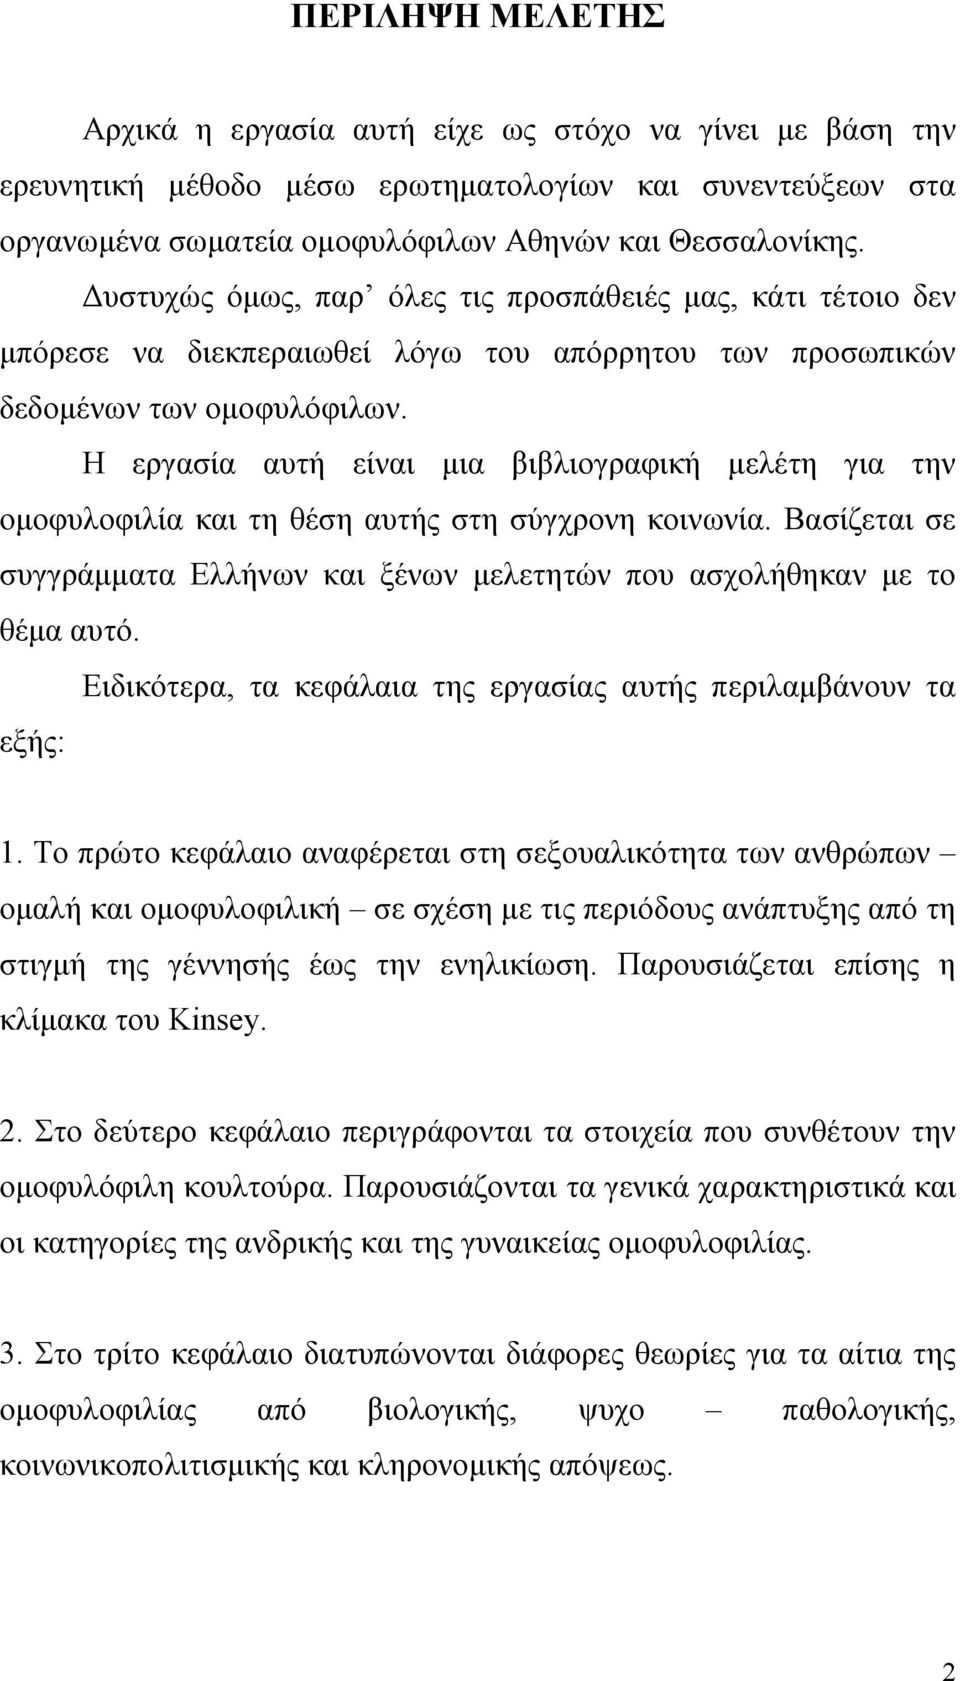 Η εργασία αυτή είναι μια βιβλιογραφική μελέτη για την ομοφυλοφιλία και τη θέση αυτής στη σύγχρονη κοινωνία. Βασίζεται σε συγγράμματα Ελλήνων και ξένων μελετητών που ασχολήθηκαν με το θέμα αυτό.